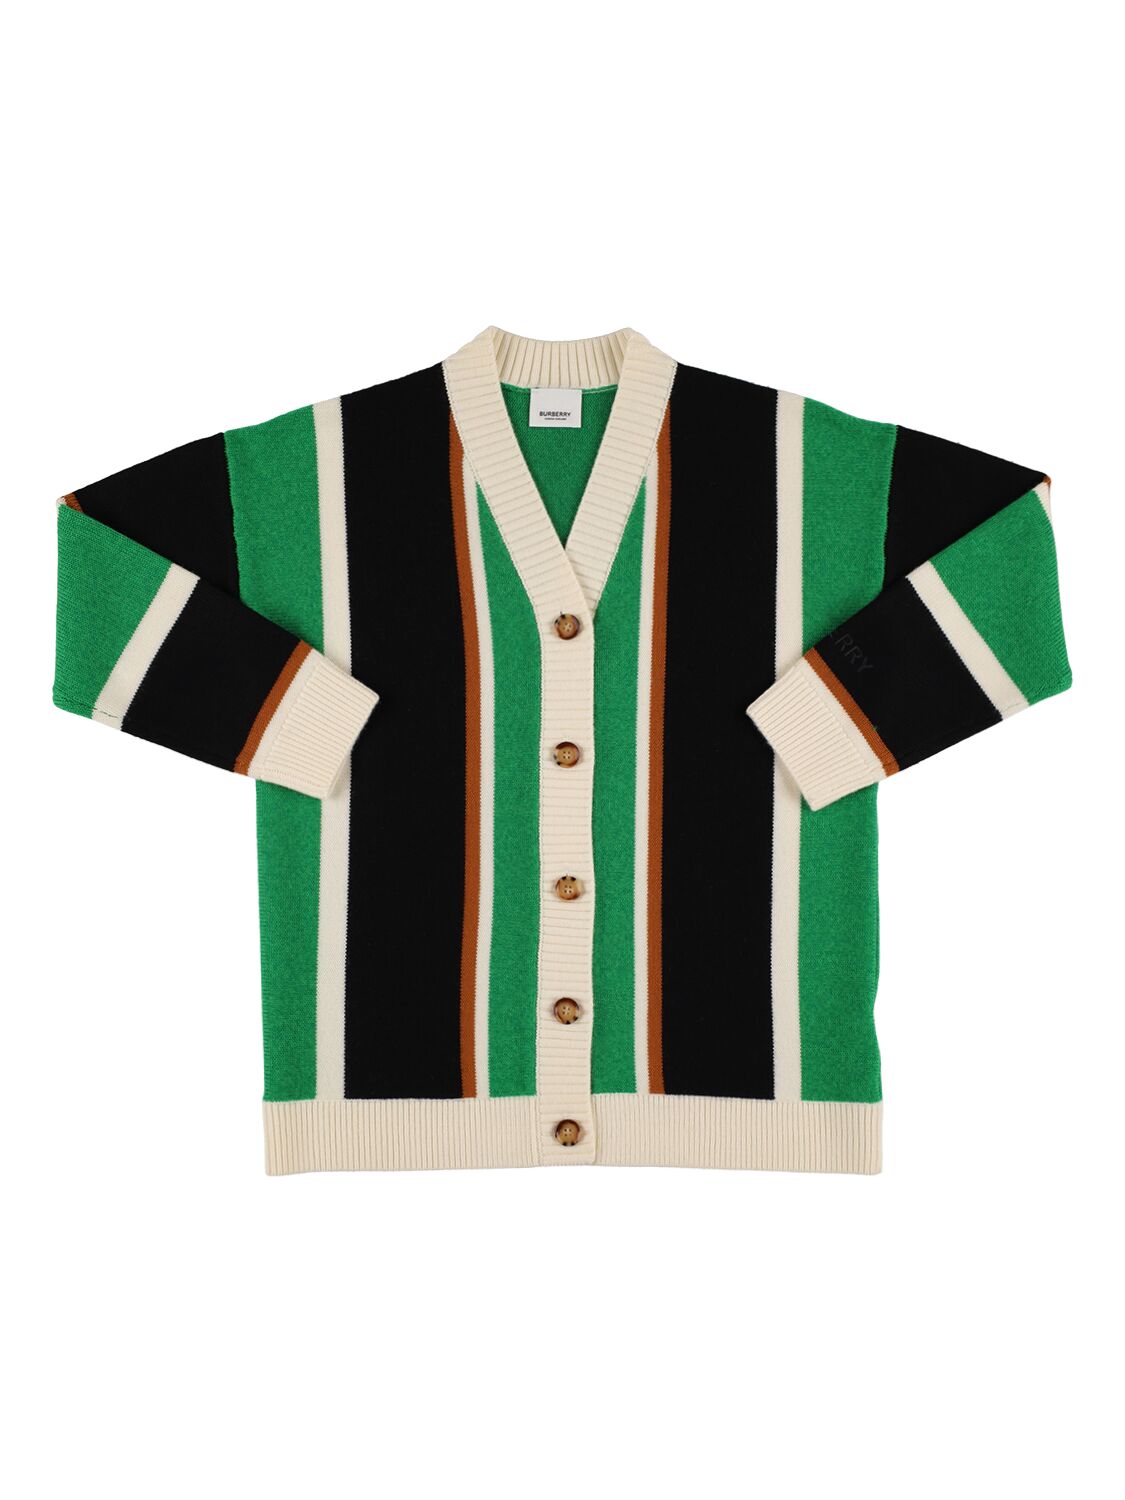 Burberry Kids' Striped Wool Blend Knit Maxi Cardigan In Green,black